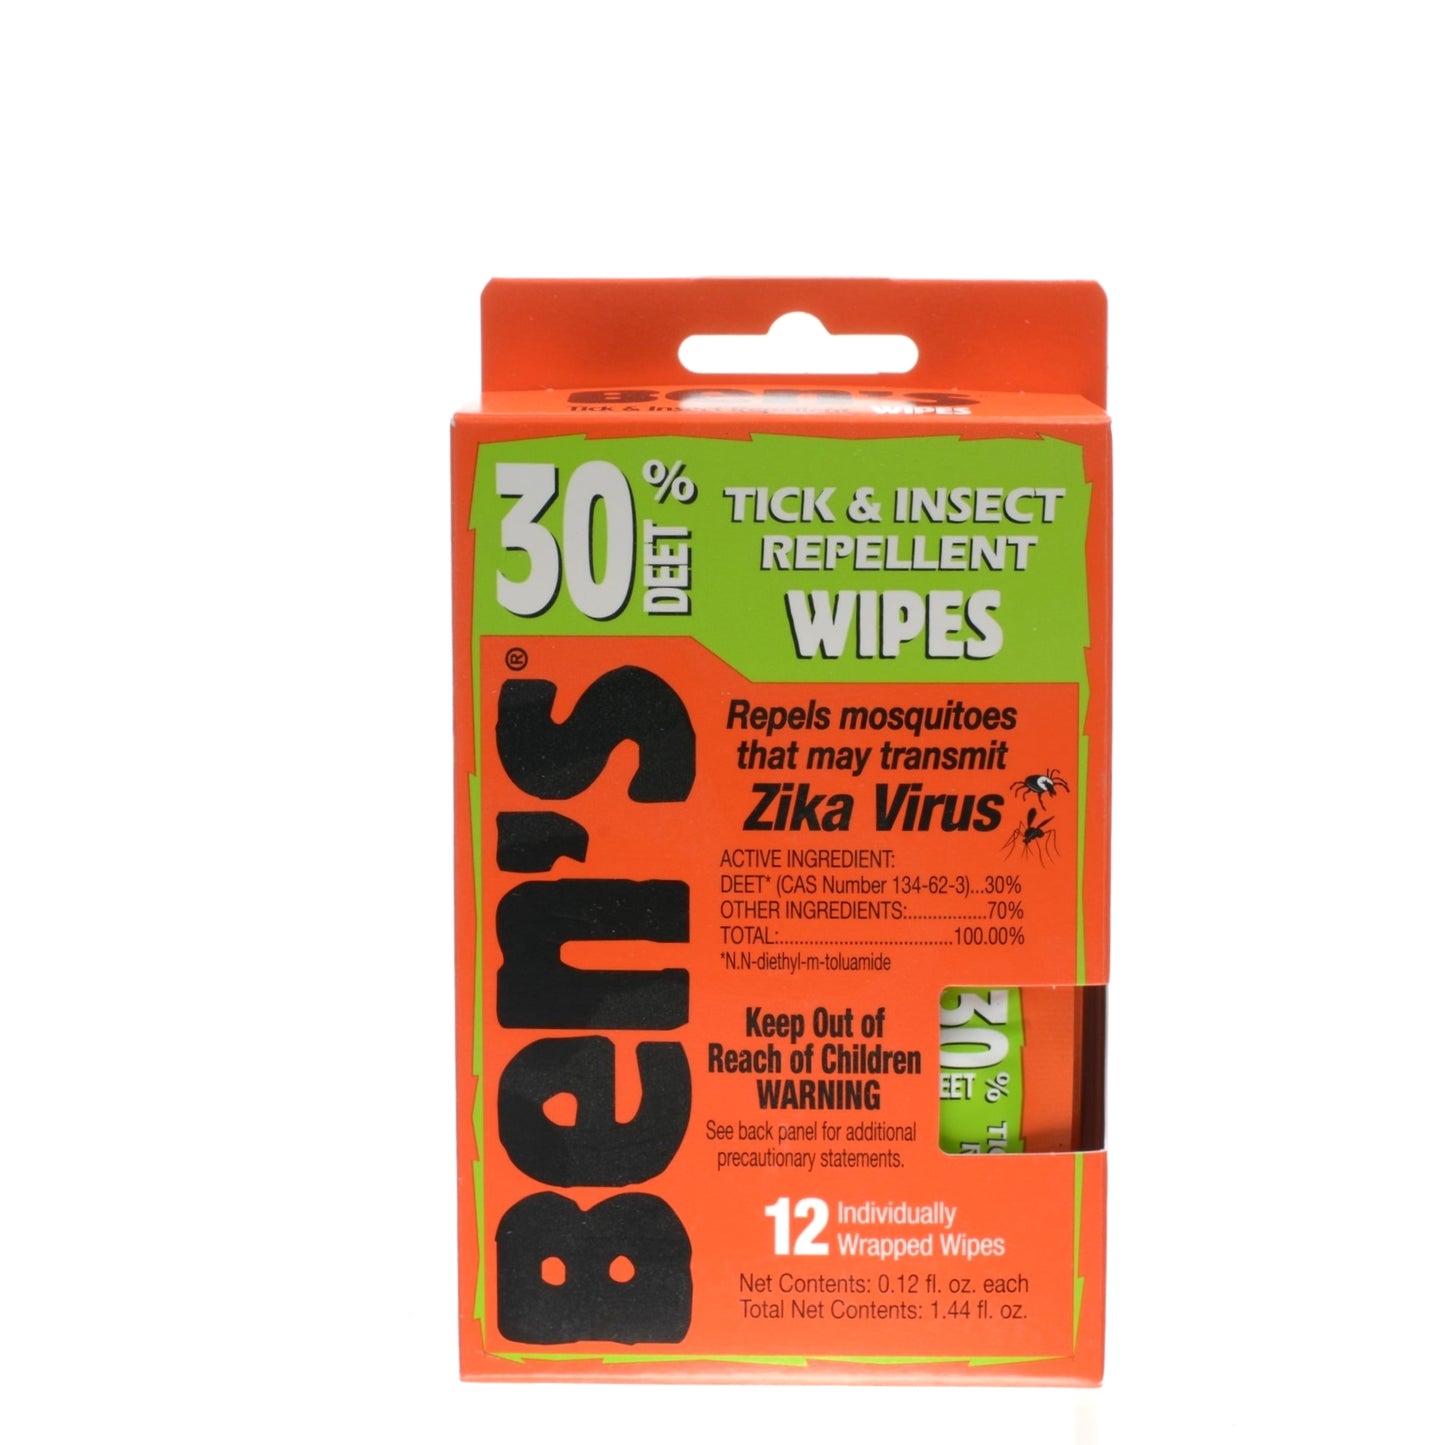 Bens Deet 30 Tick & Insect Repellent Wipes 12 Pack